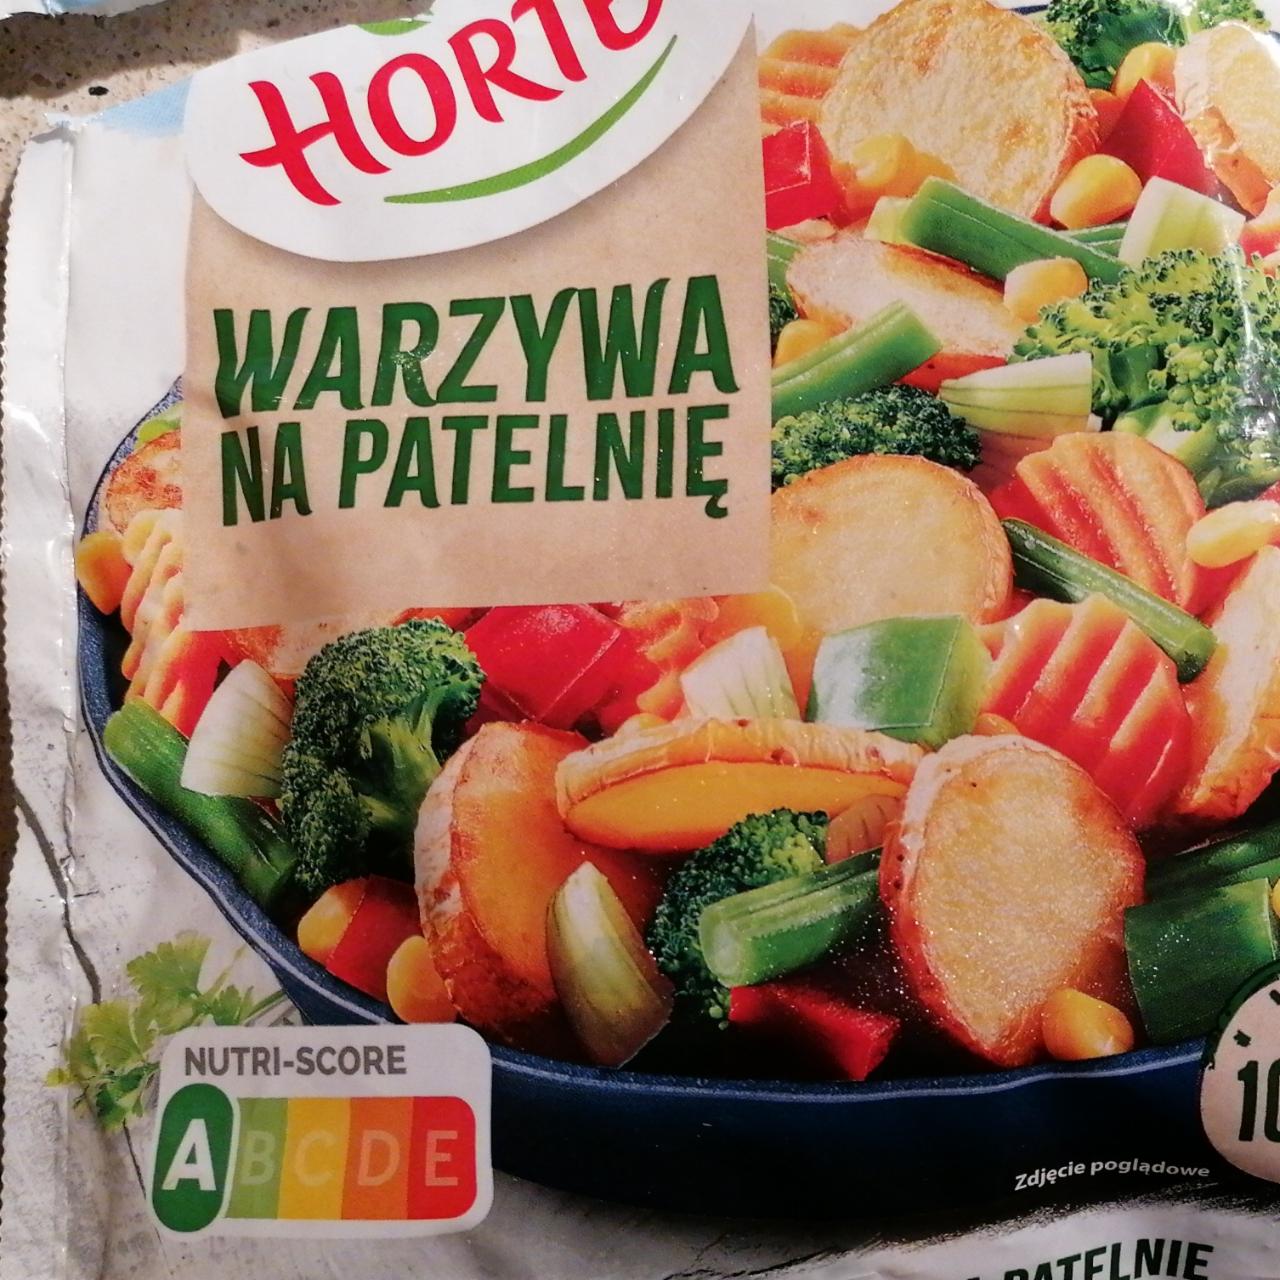 Fotografie - Warzywa na patelnie Hortex